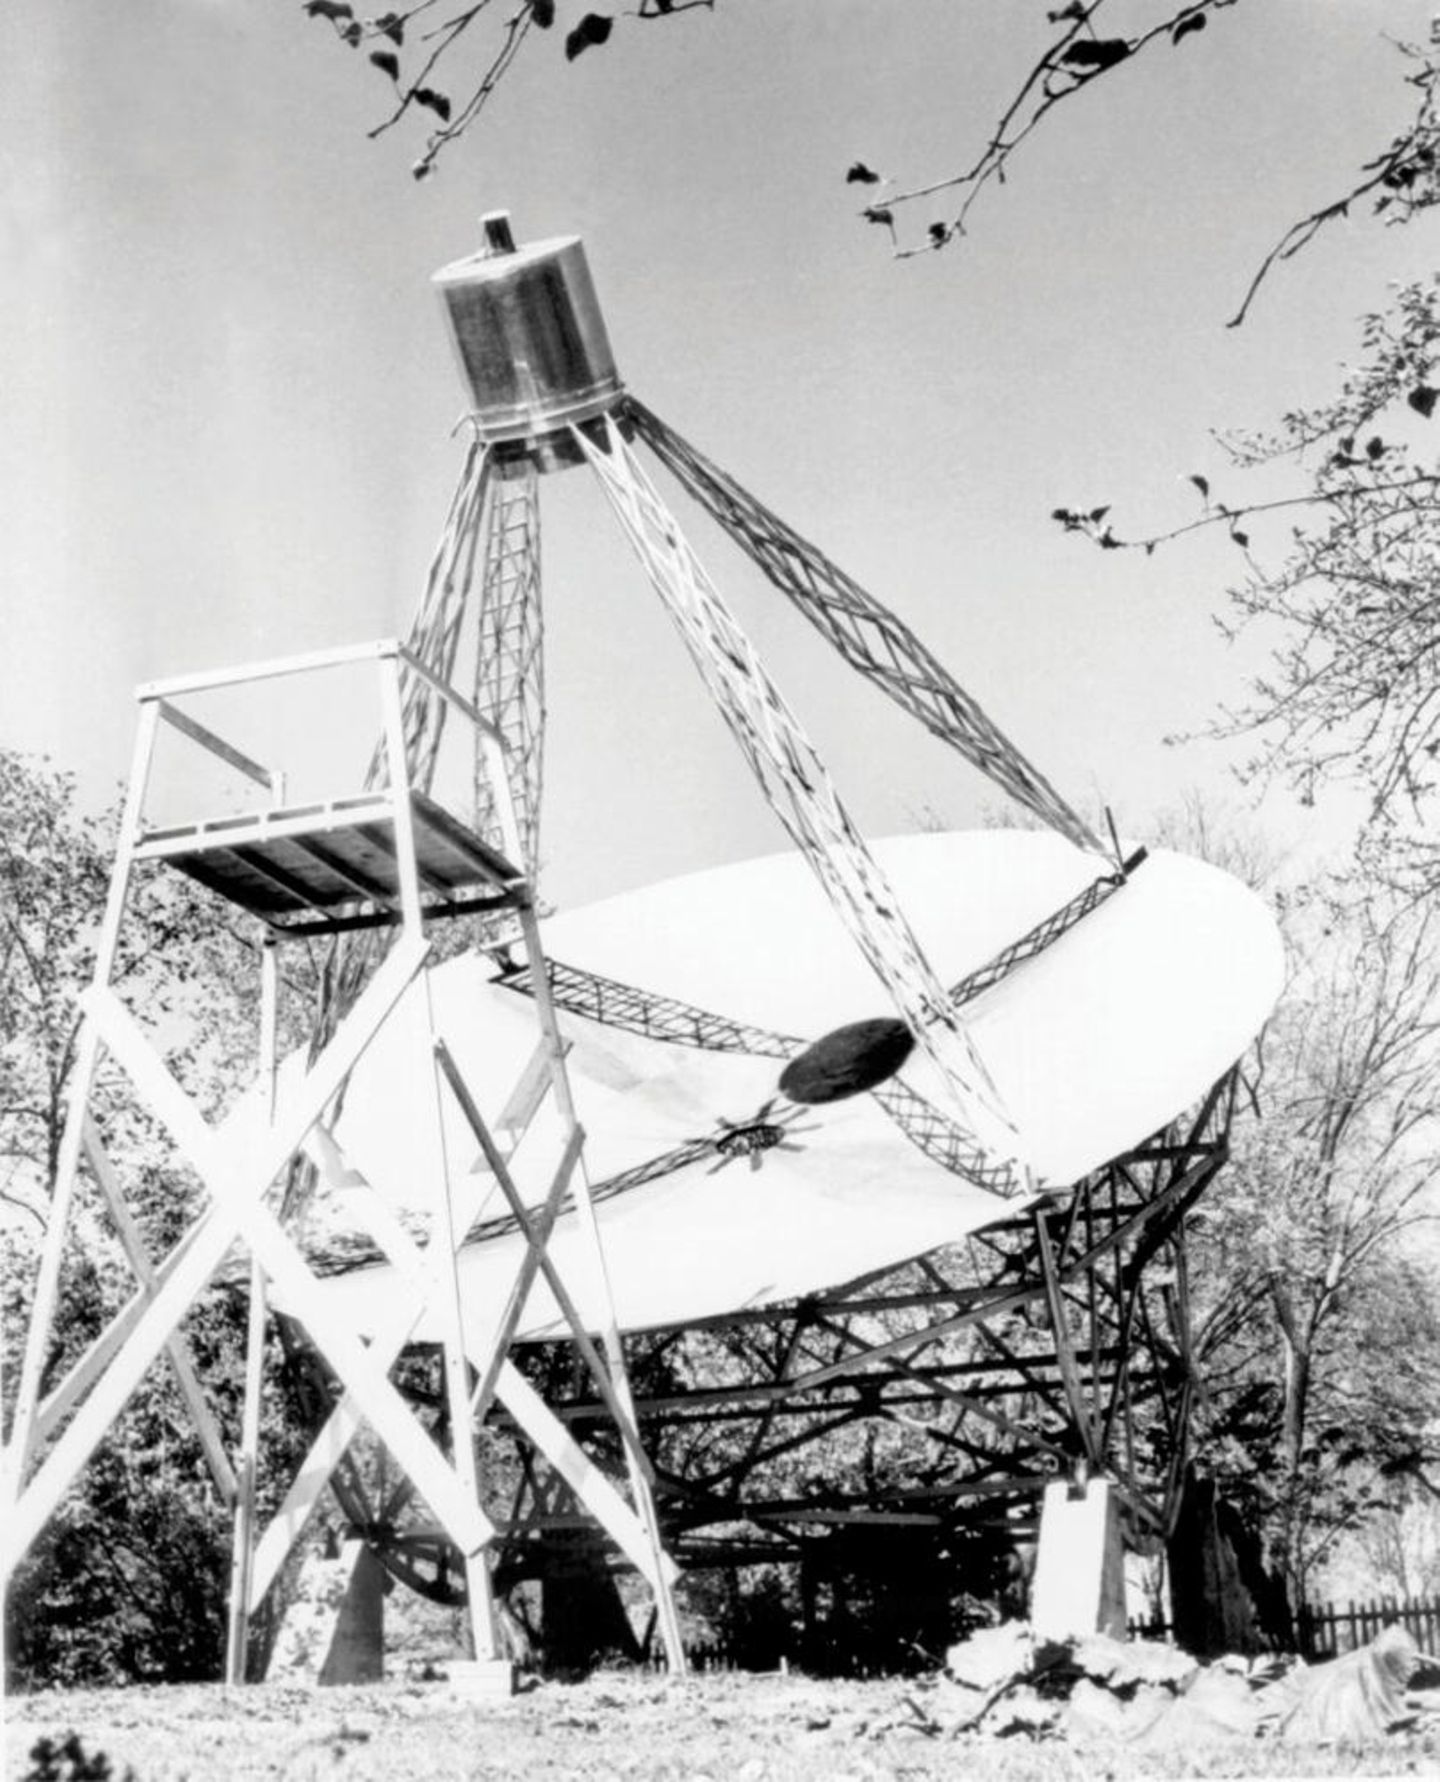 Grote Rebers erstes Radioteleskop